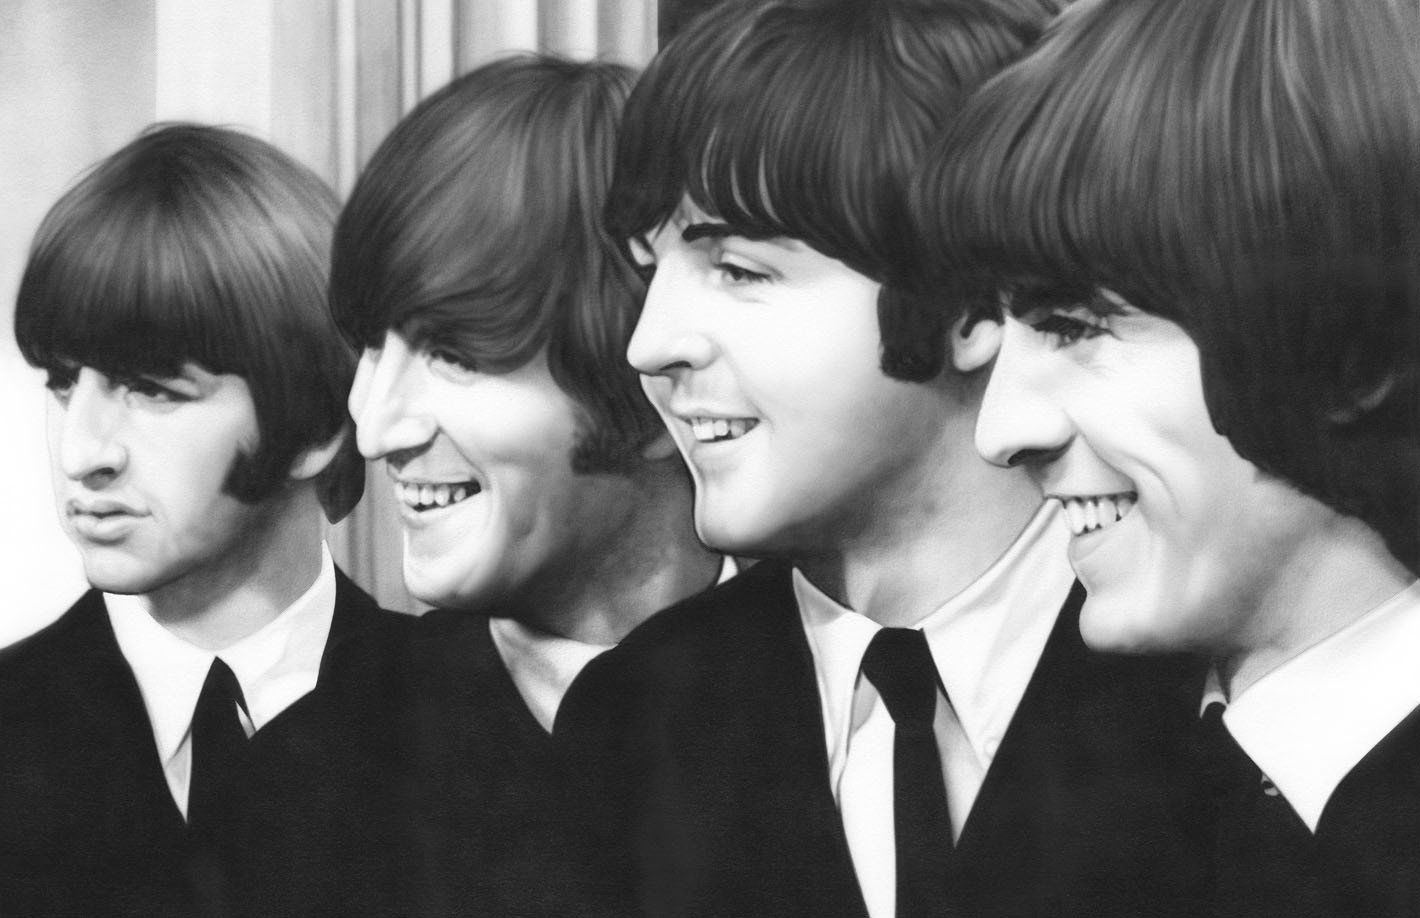 General 1420x918 The Beatles George Harrison Ringo Starr Paul McCartney John Lennon men monochrome music band artwork